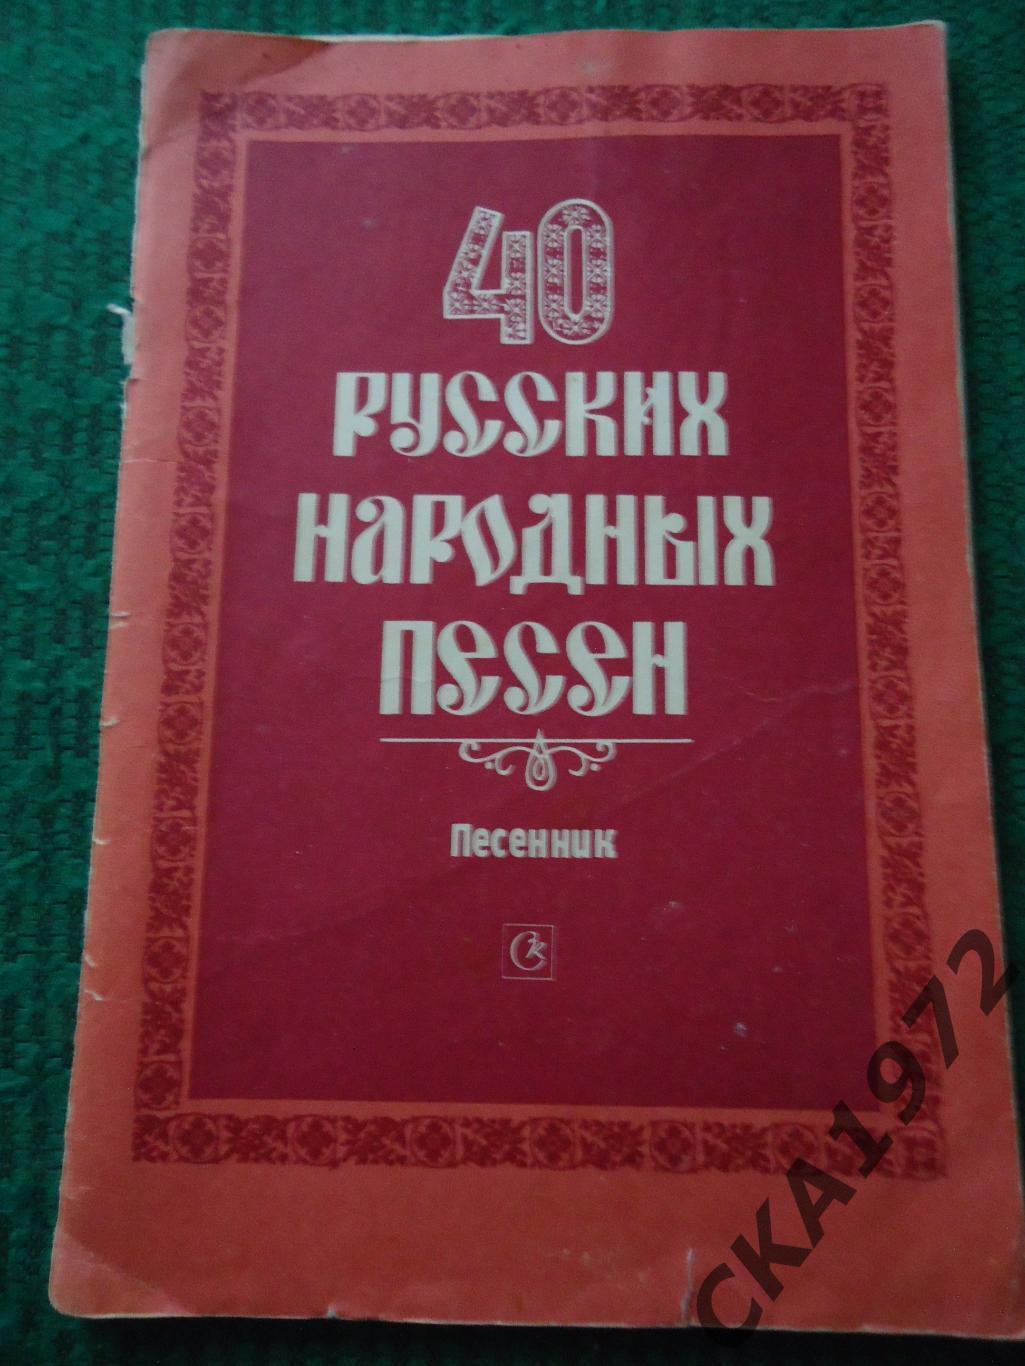 песенник 40 русских народных песен 1988 64 стр